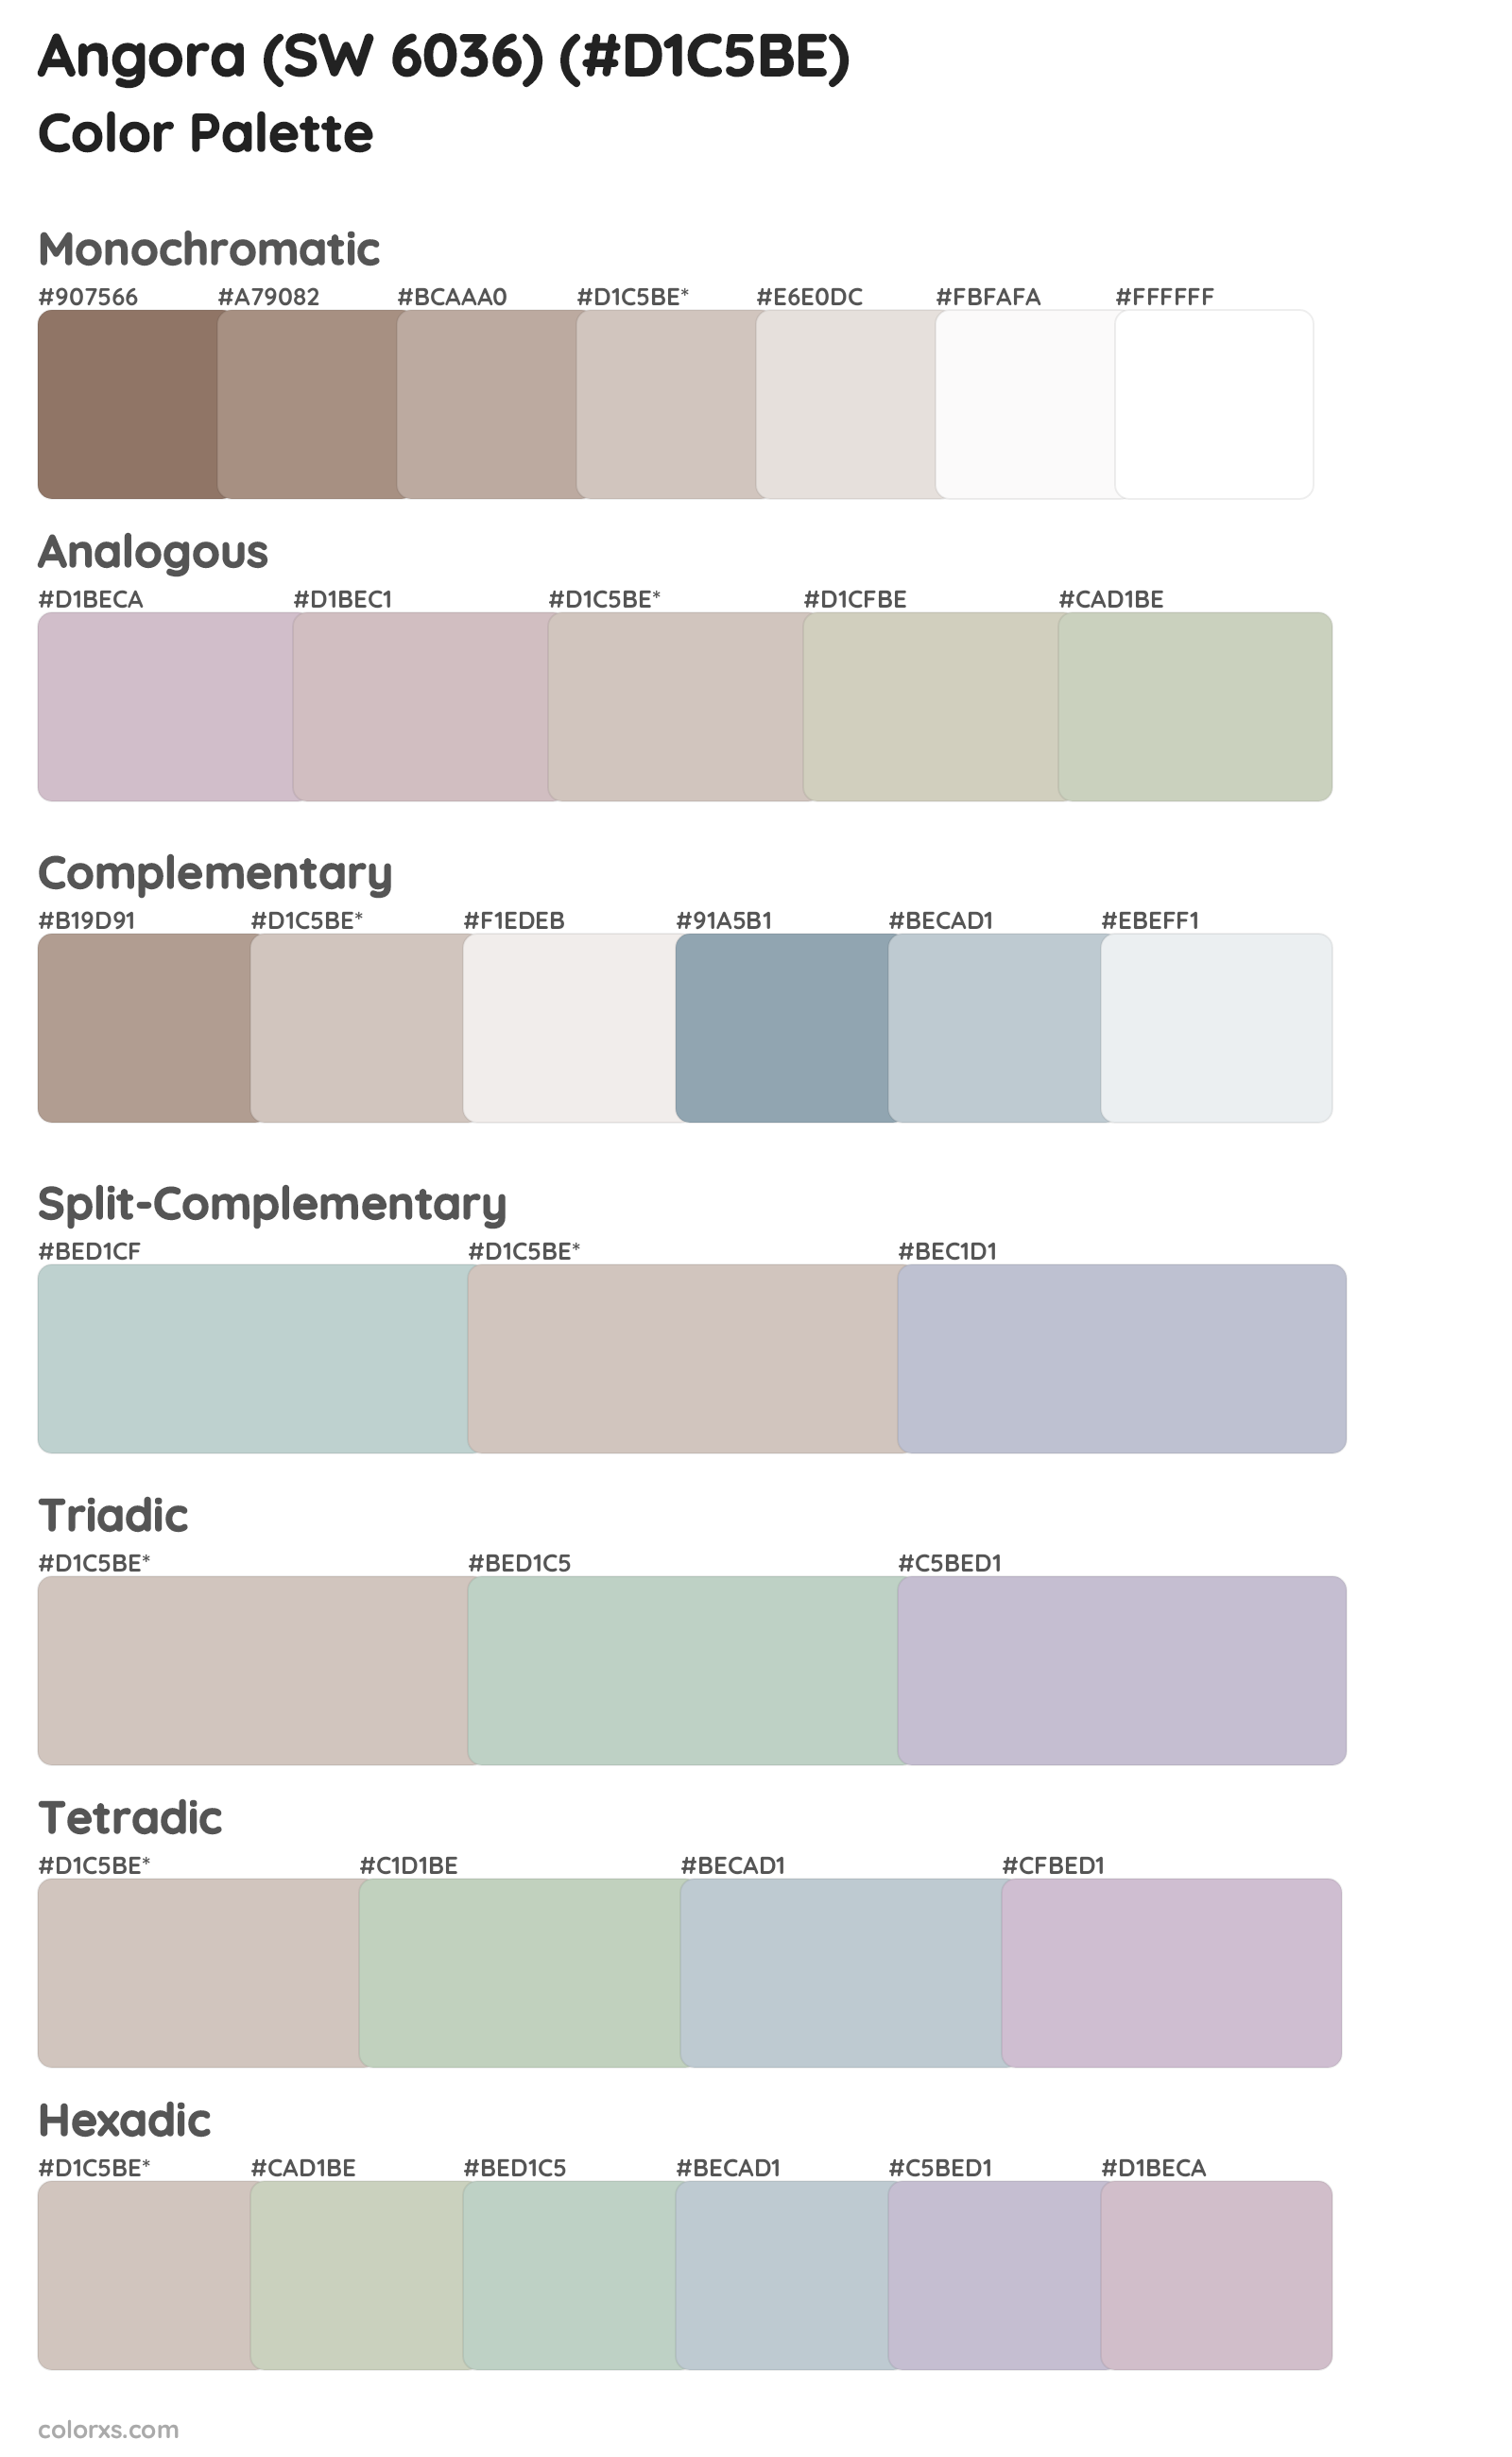 Angora (SW 6036) Color Scheme Palettes